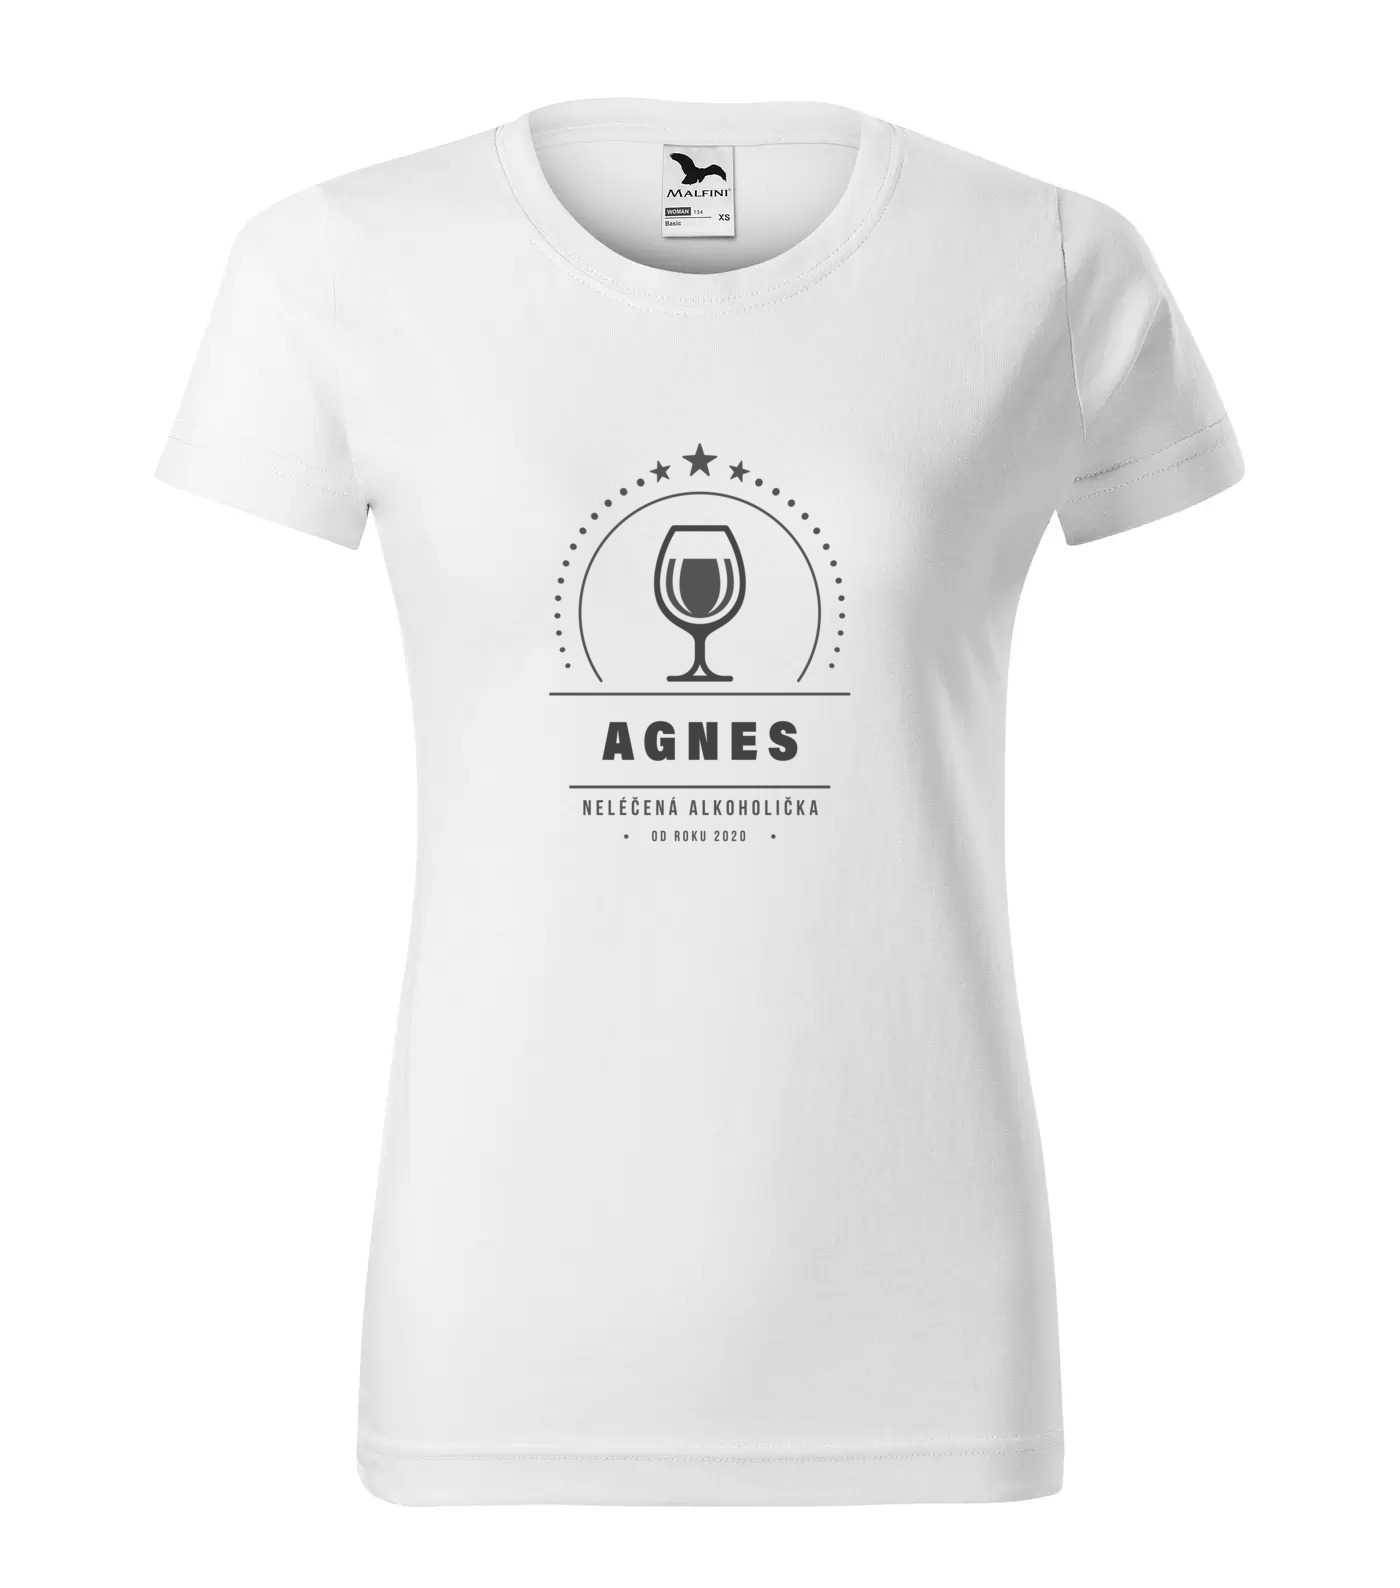 Tričko Alkoholička Agnes